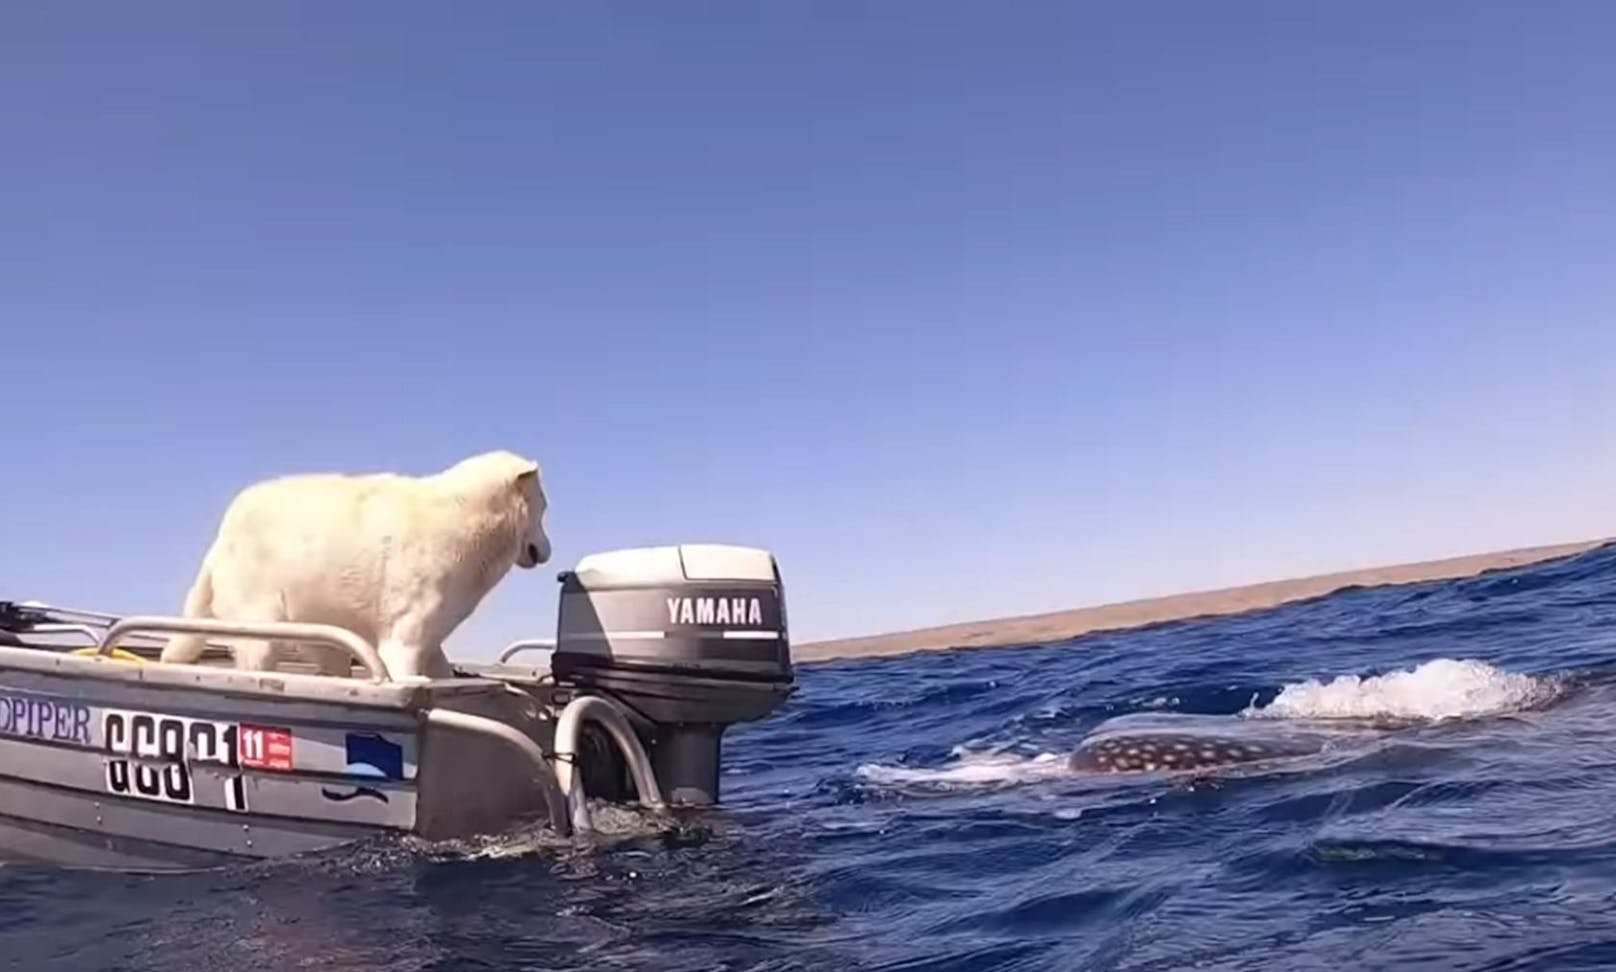 Immer wieder wechselte er auf dem Boot die Seite um seinen neuen Freund zu begrüßen. 